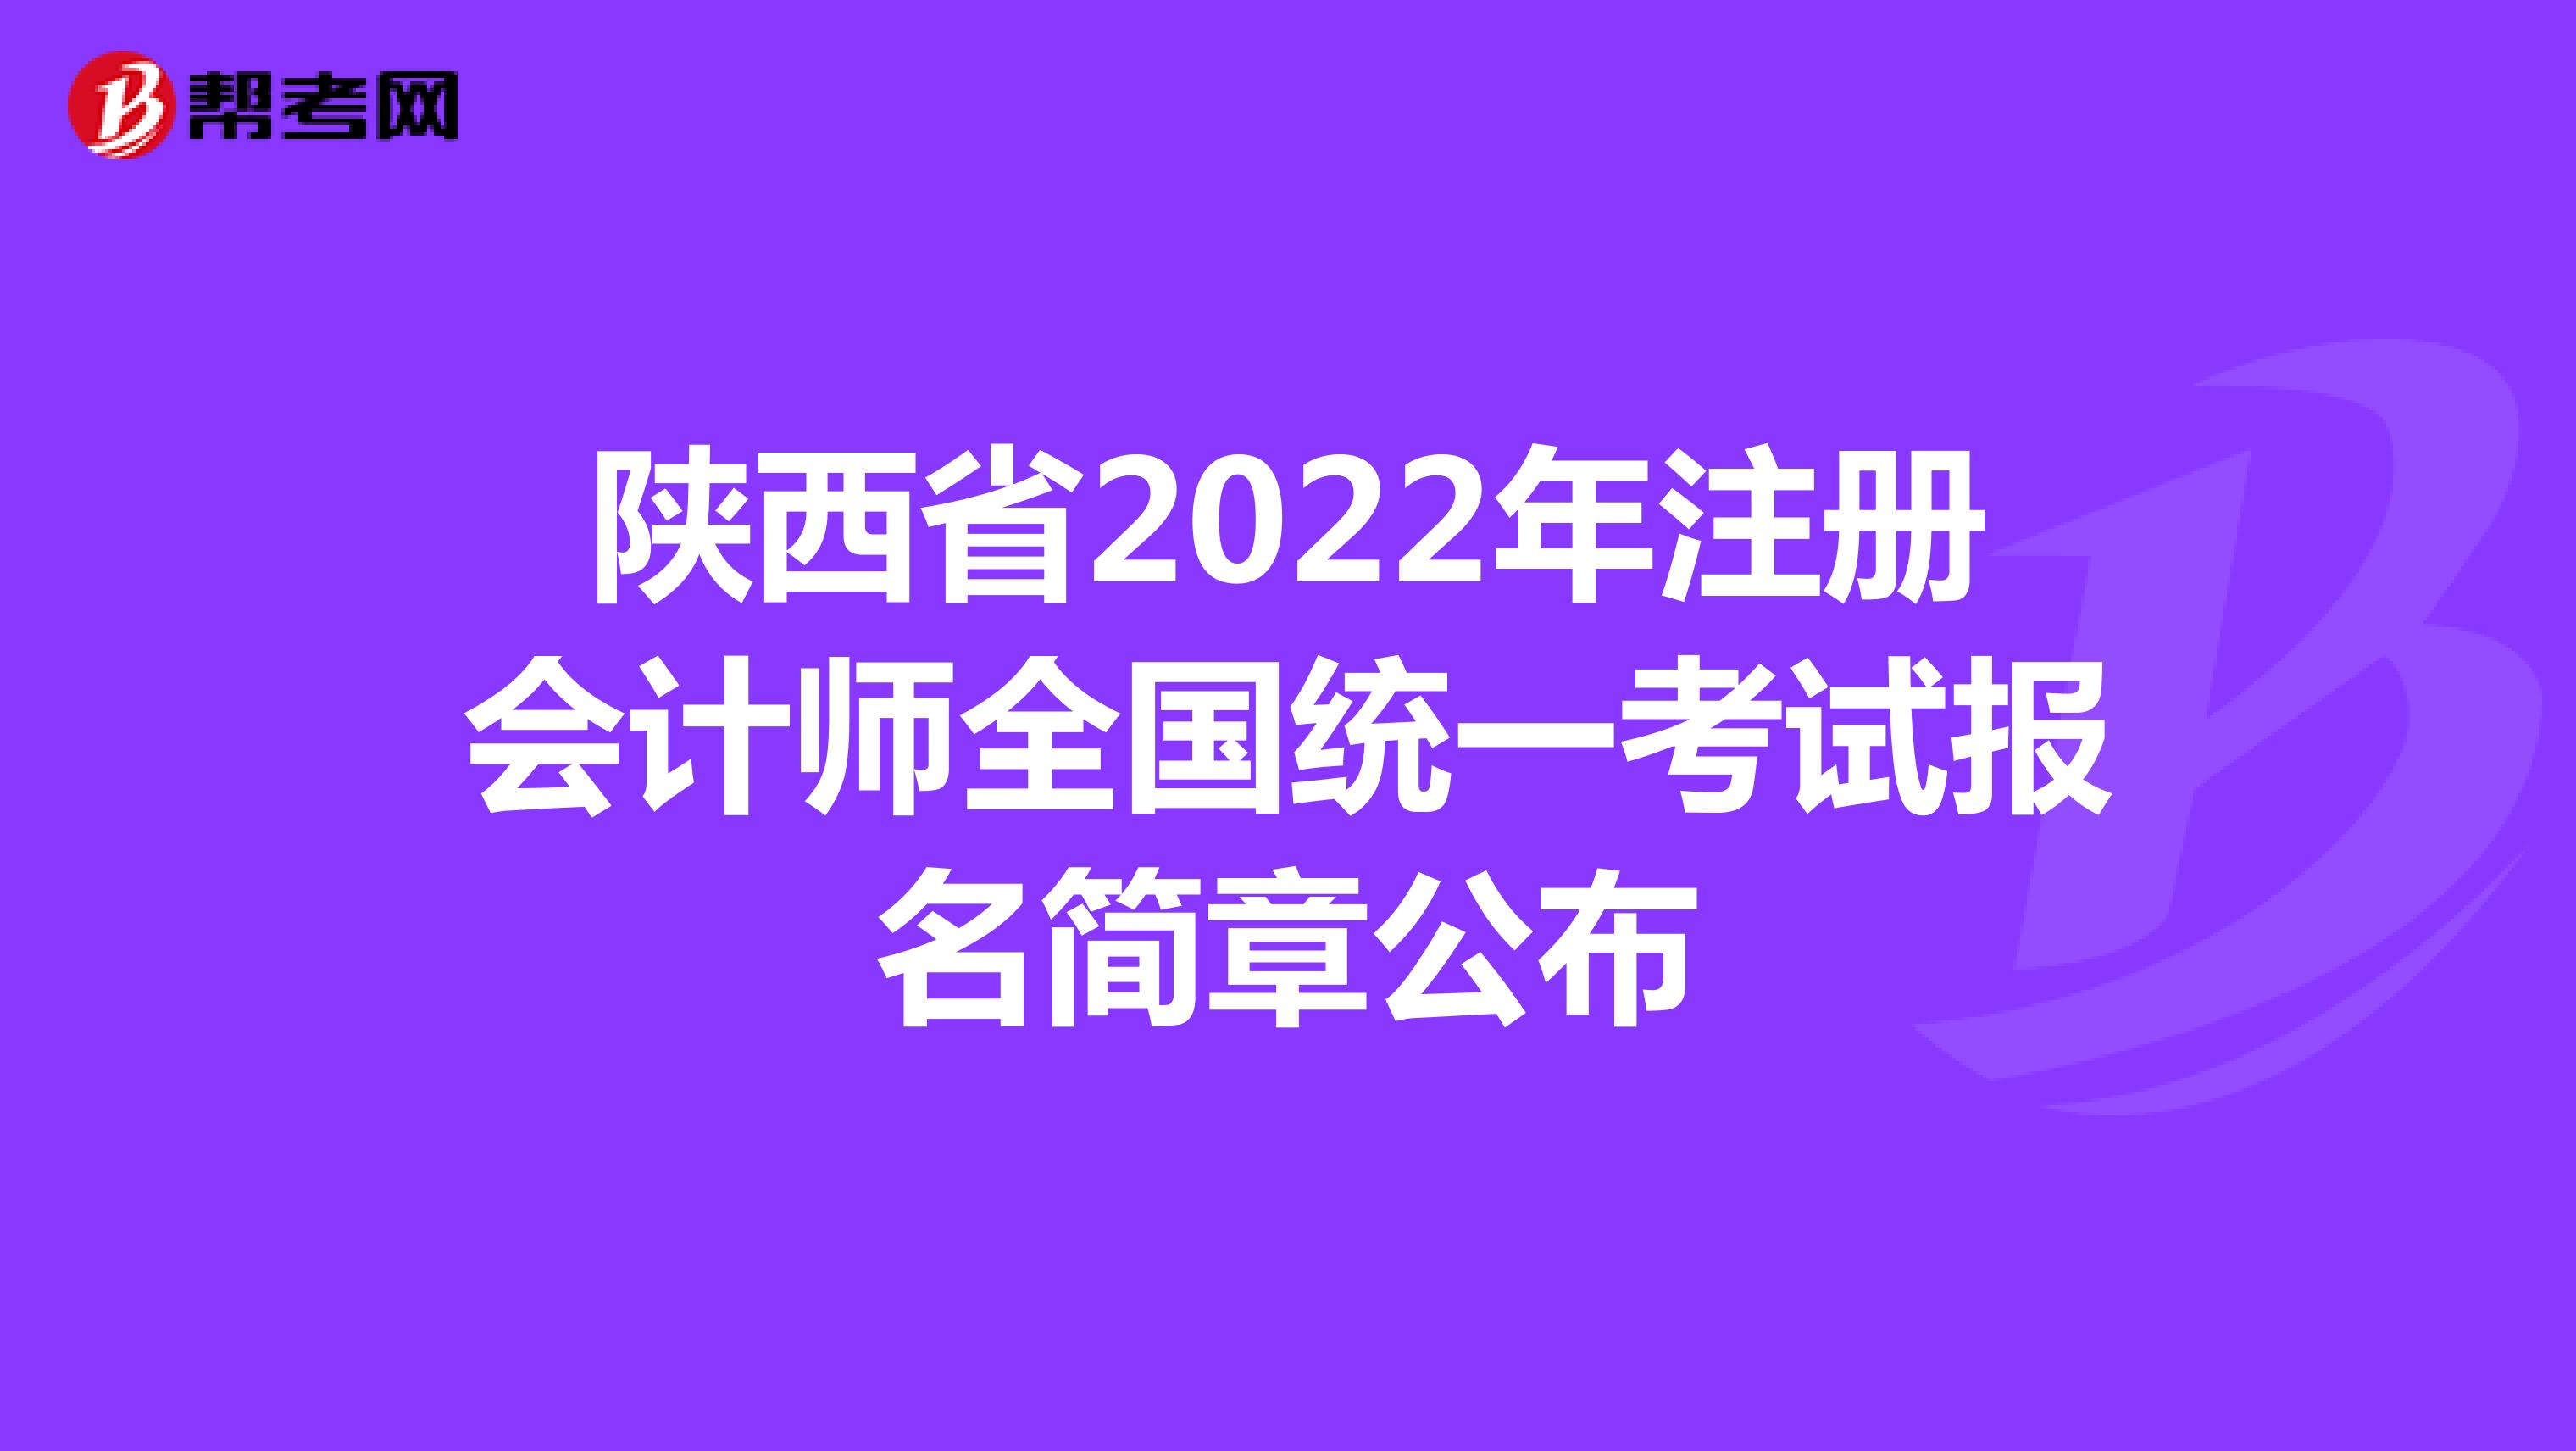 陕西省2022年注册会计师全国统一考试报名简章公布